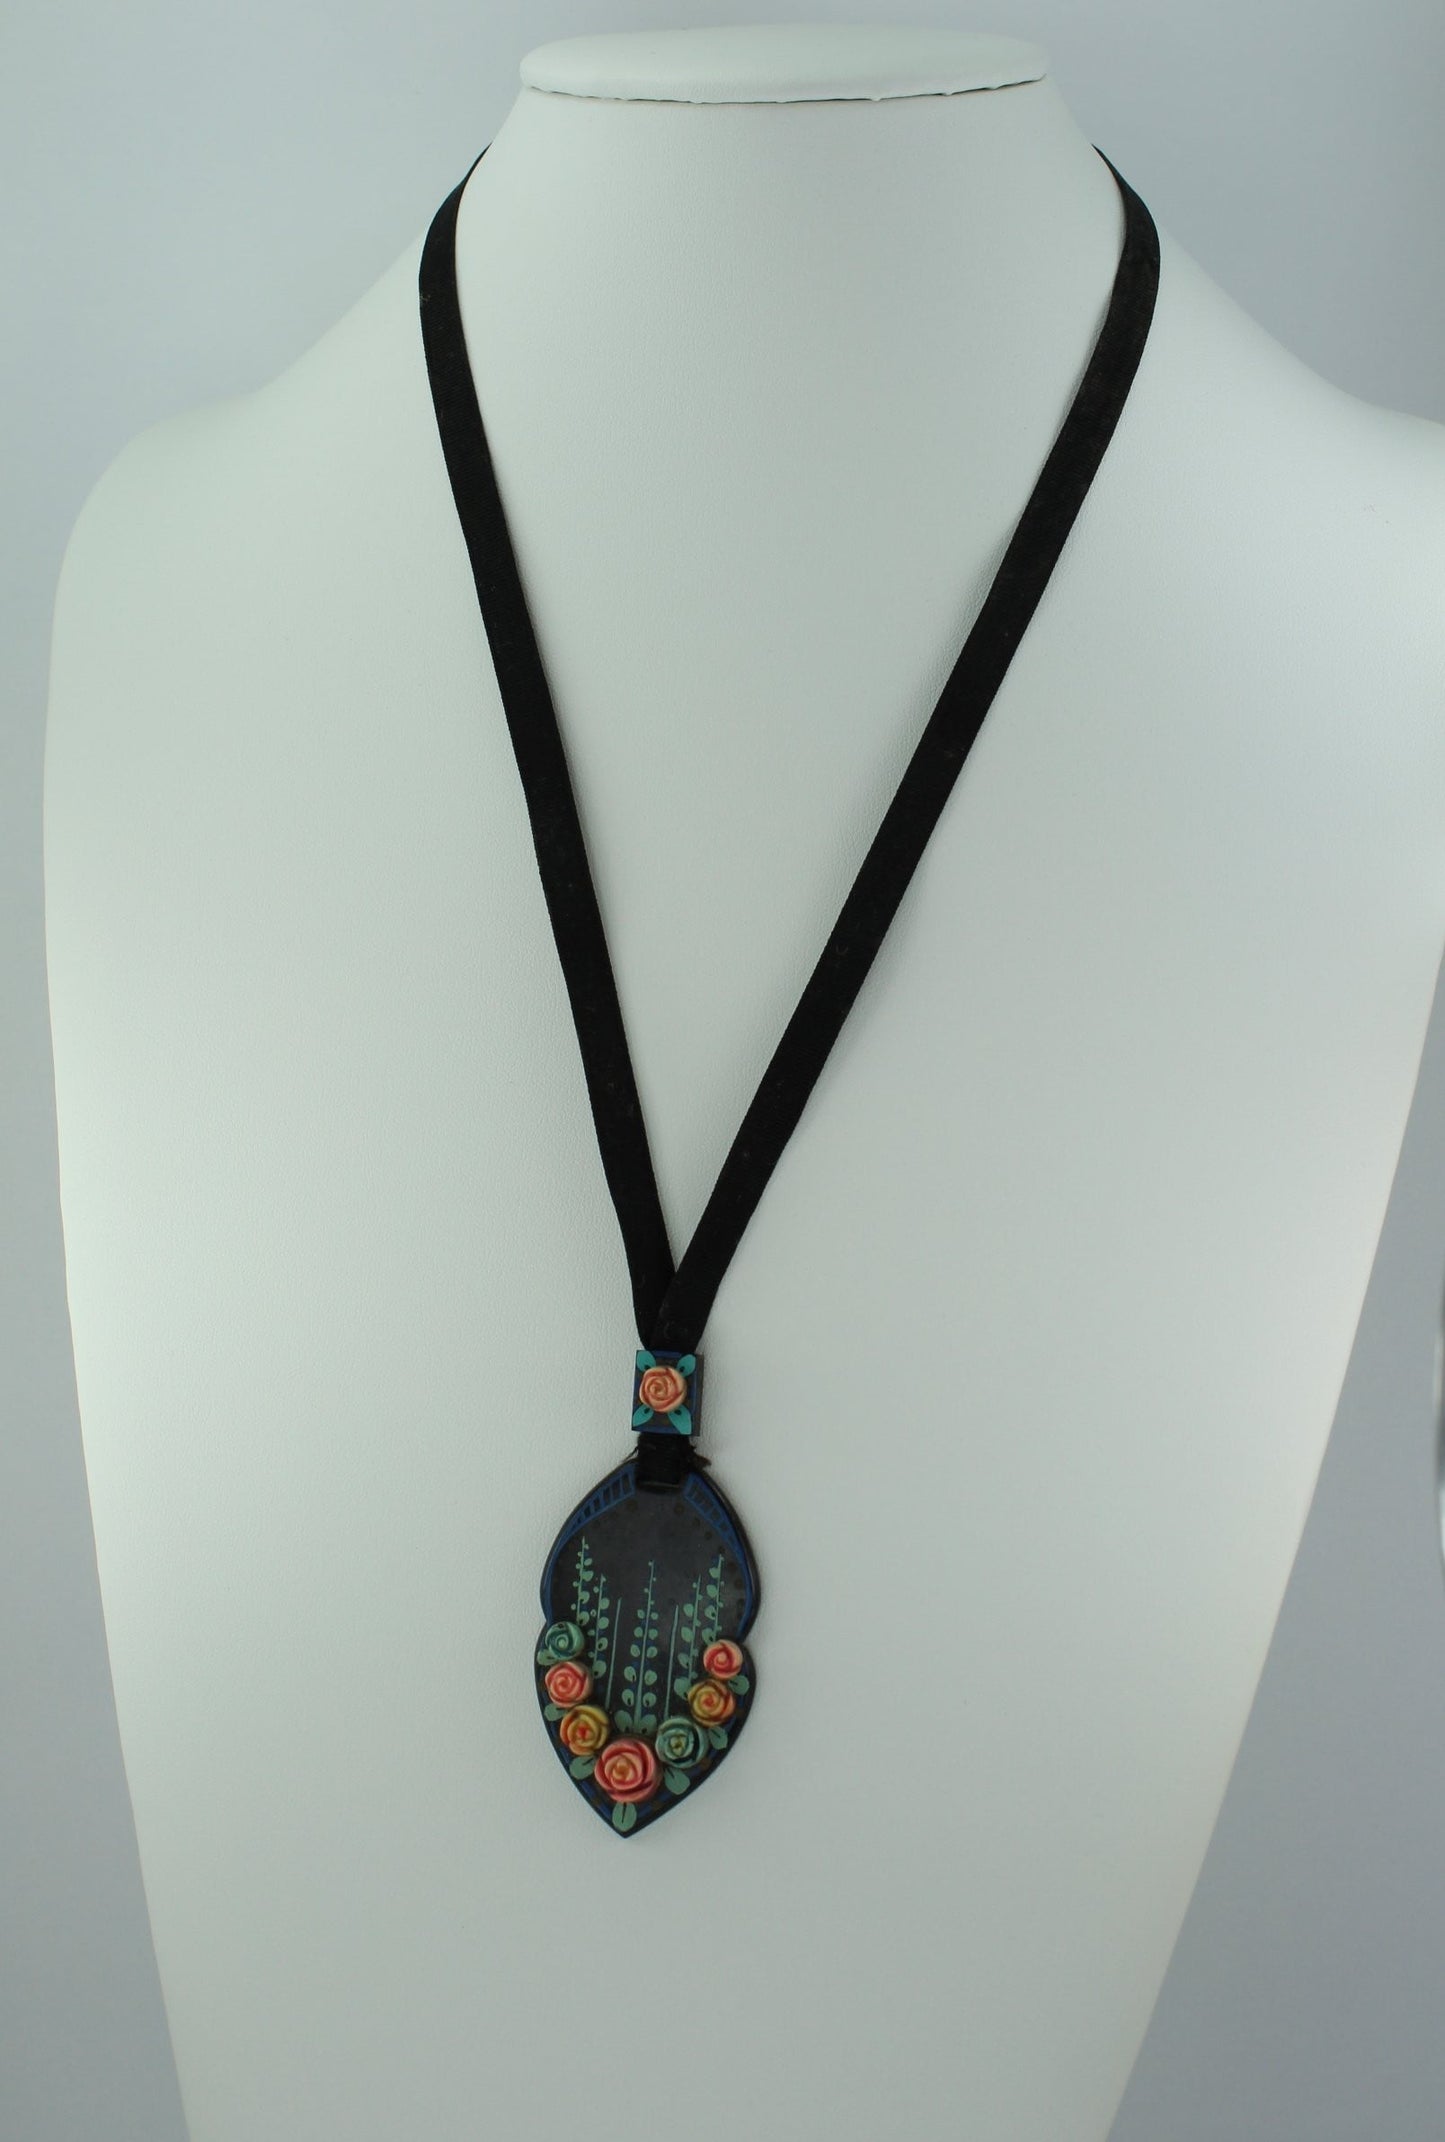 Antique Nouveau Necklace Black Celluloid Pastel Flowers Ribbon Slider Chain collectible